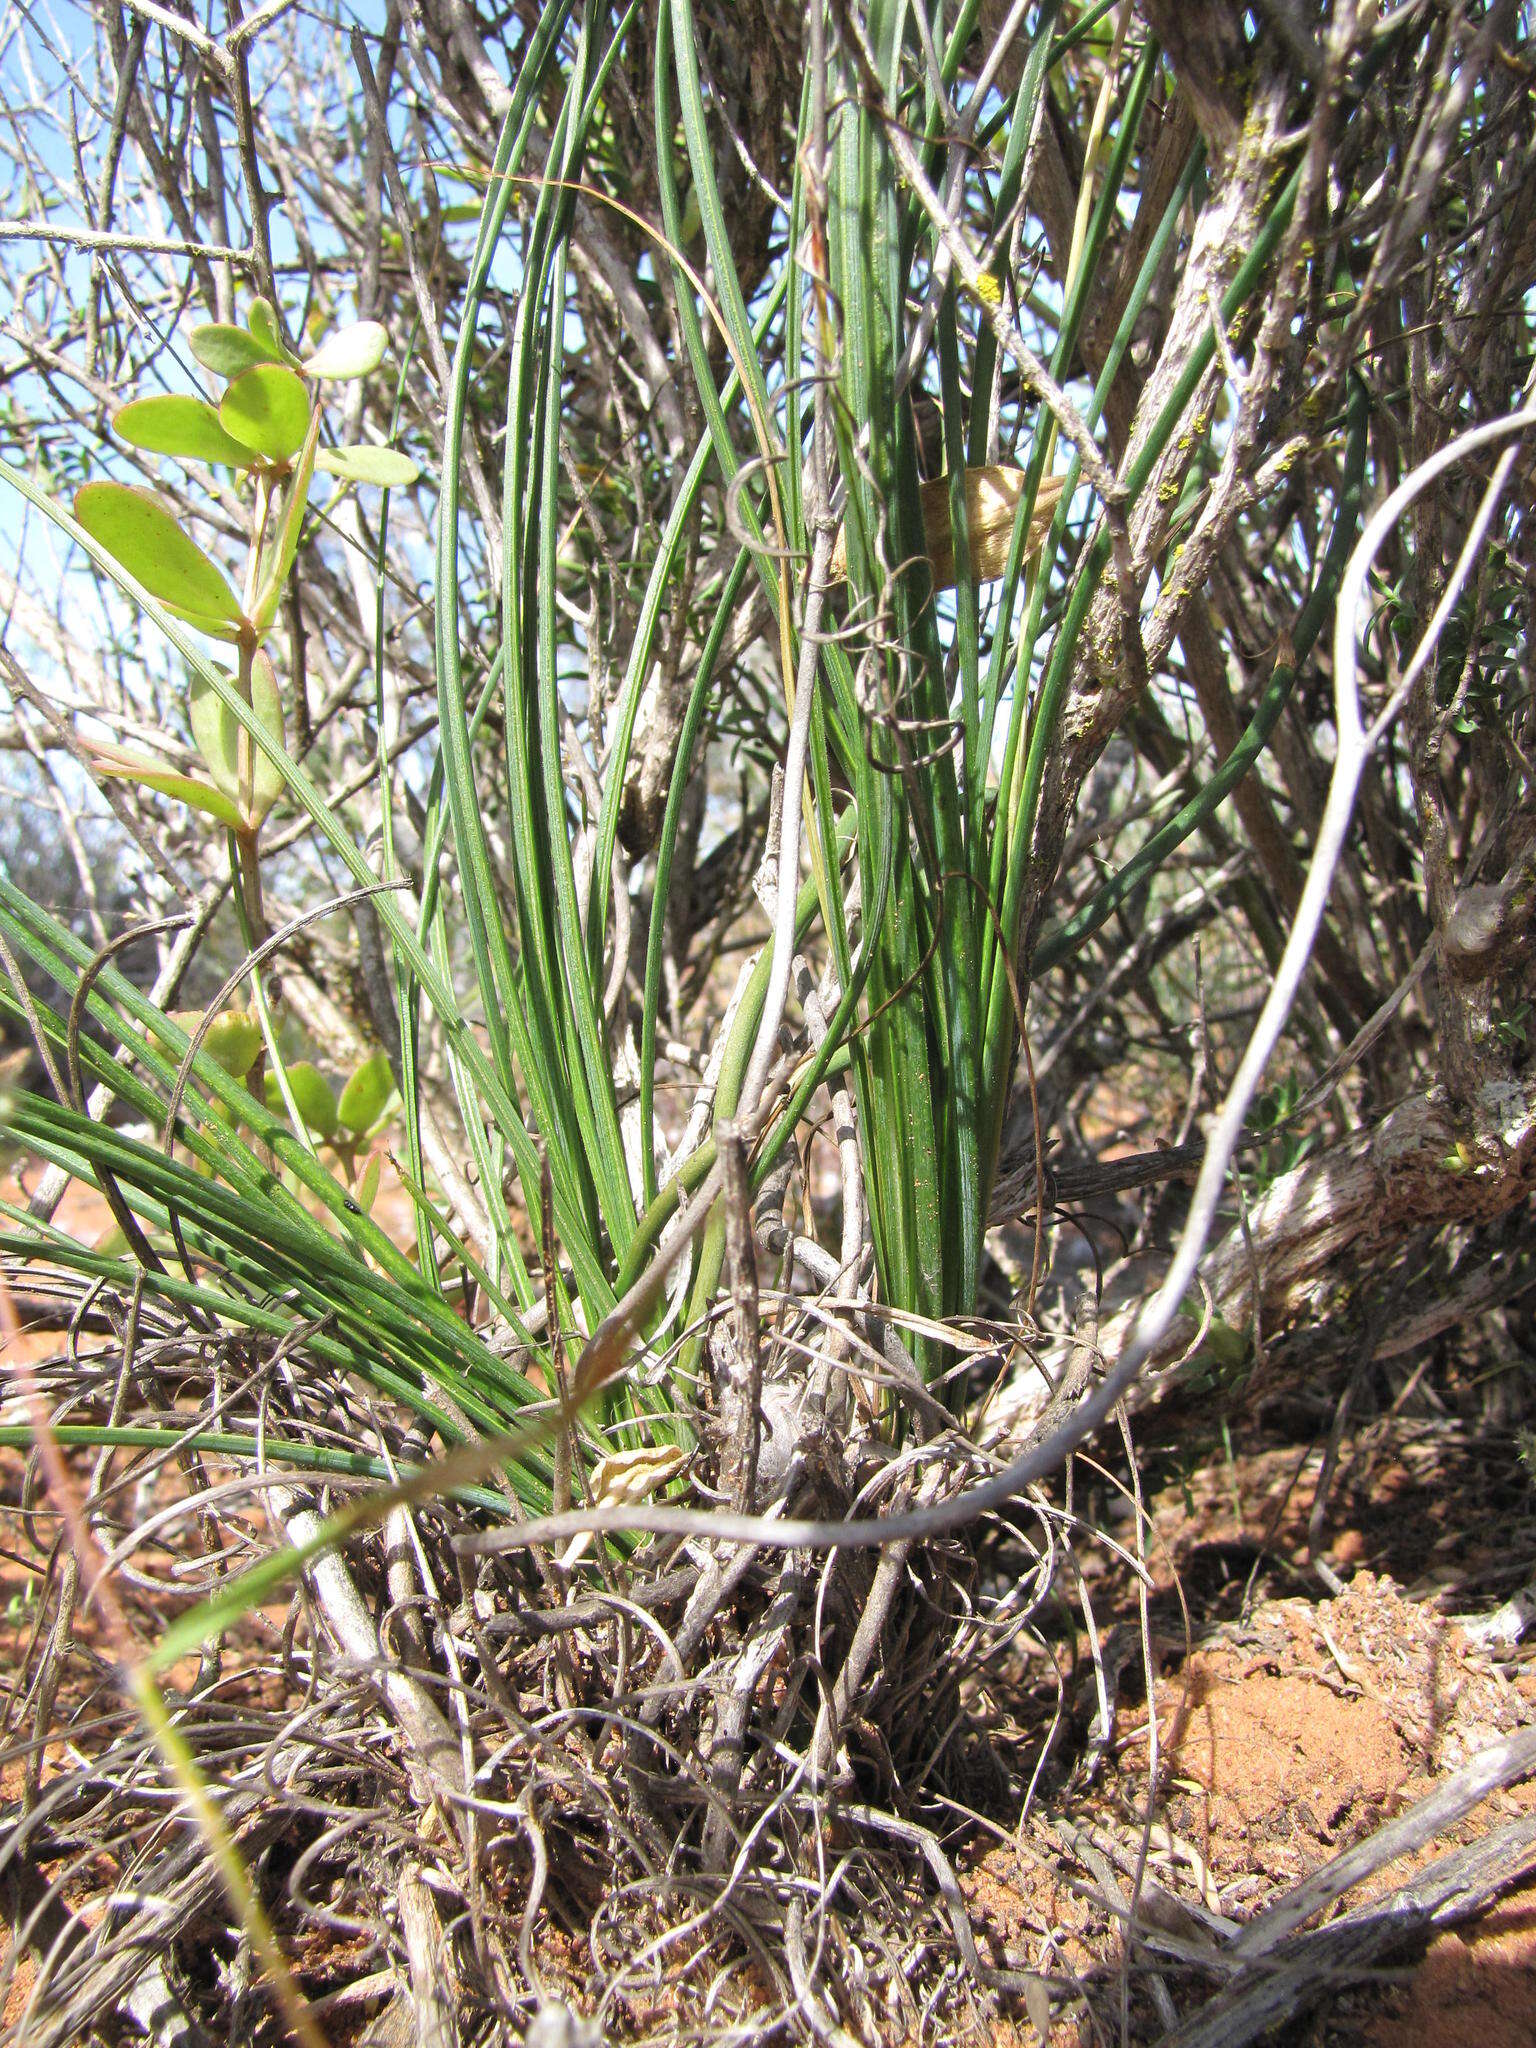 Image of Chlorophytum rangei (Engl. & K. Krause) Nordal